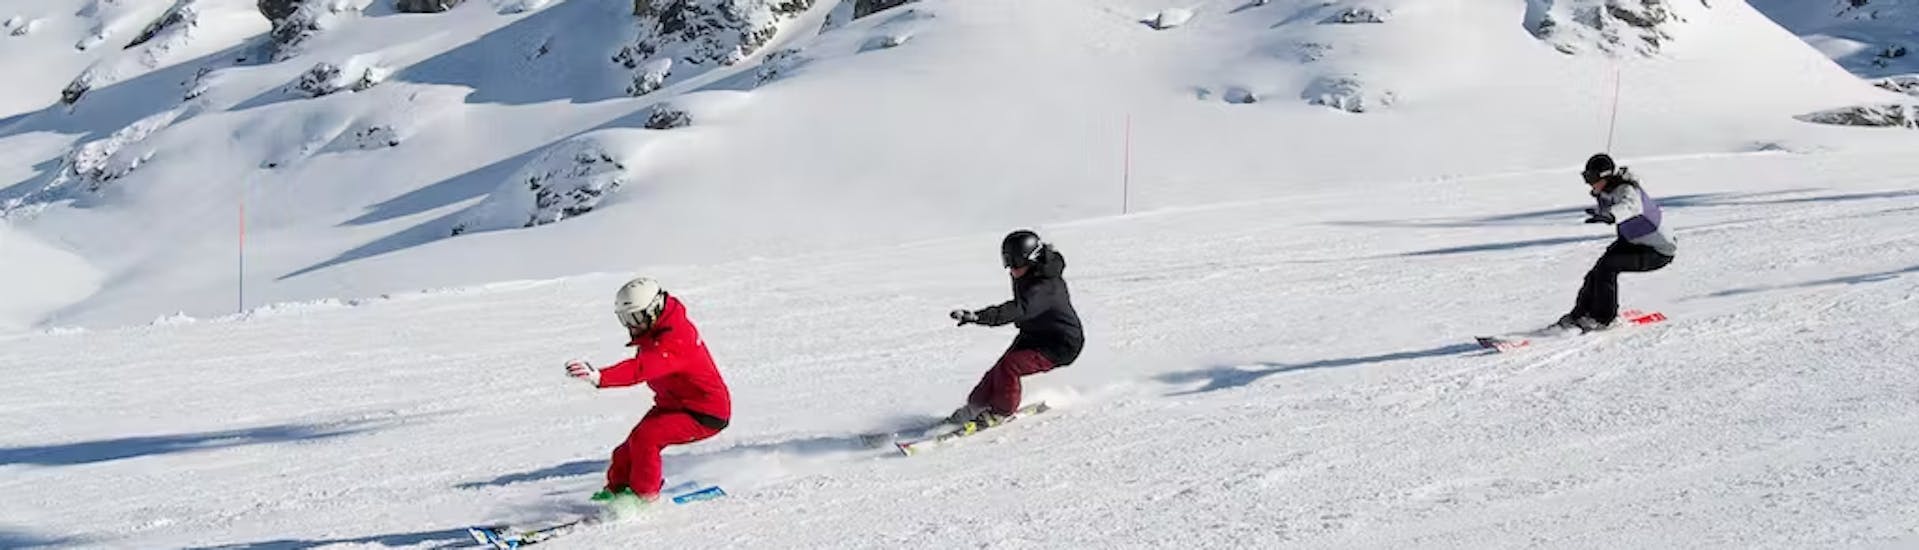 Skilessen voor tieners (14-18 jaar) voor gevorderde skiërs.